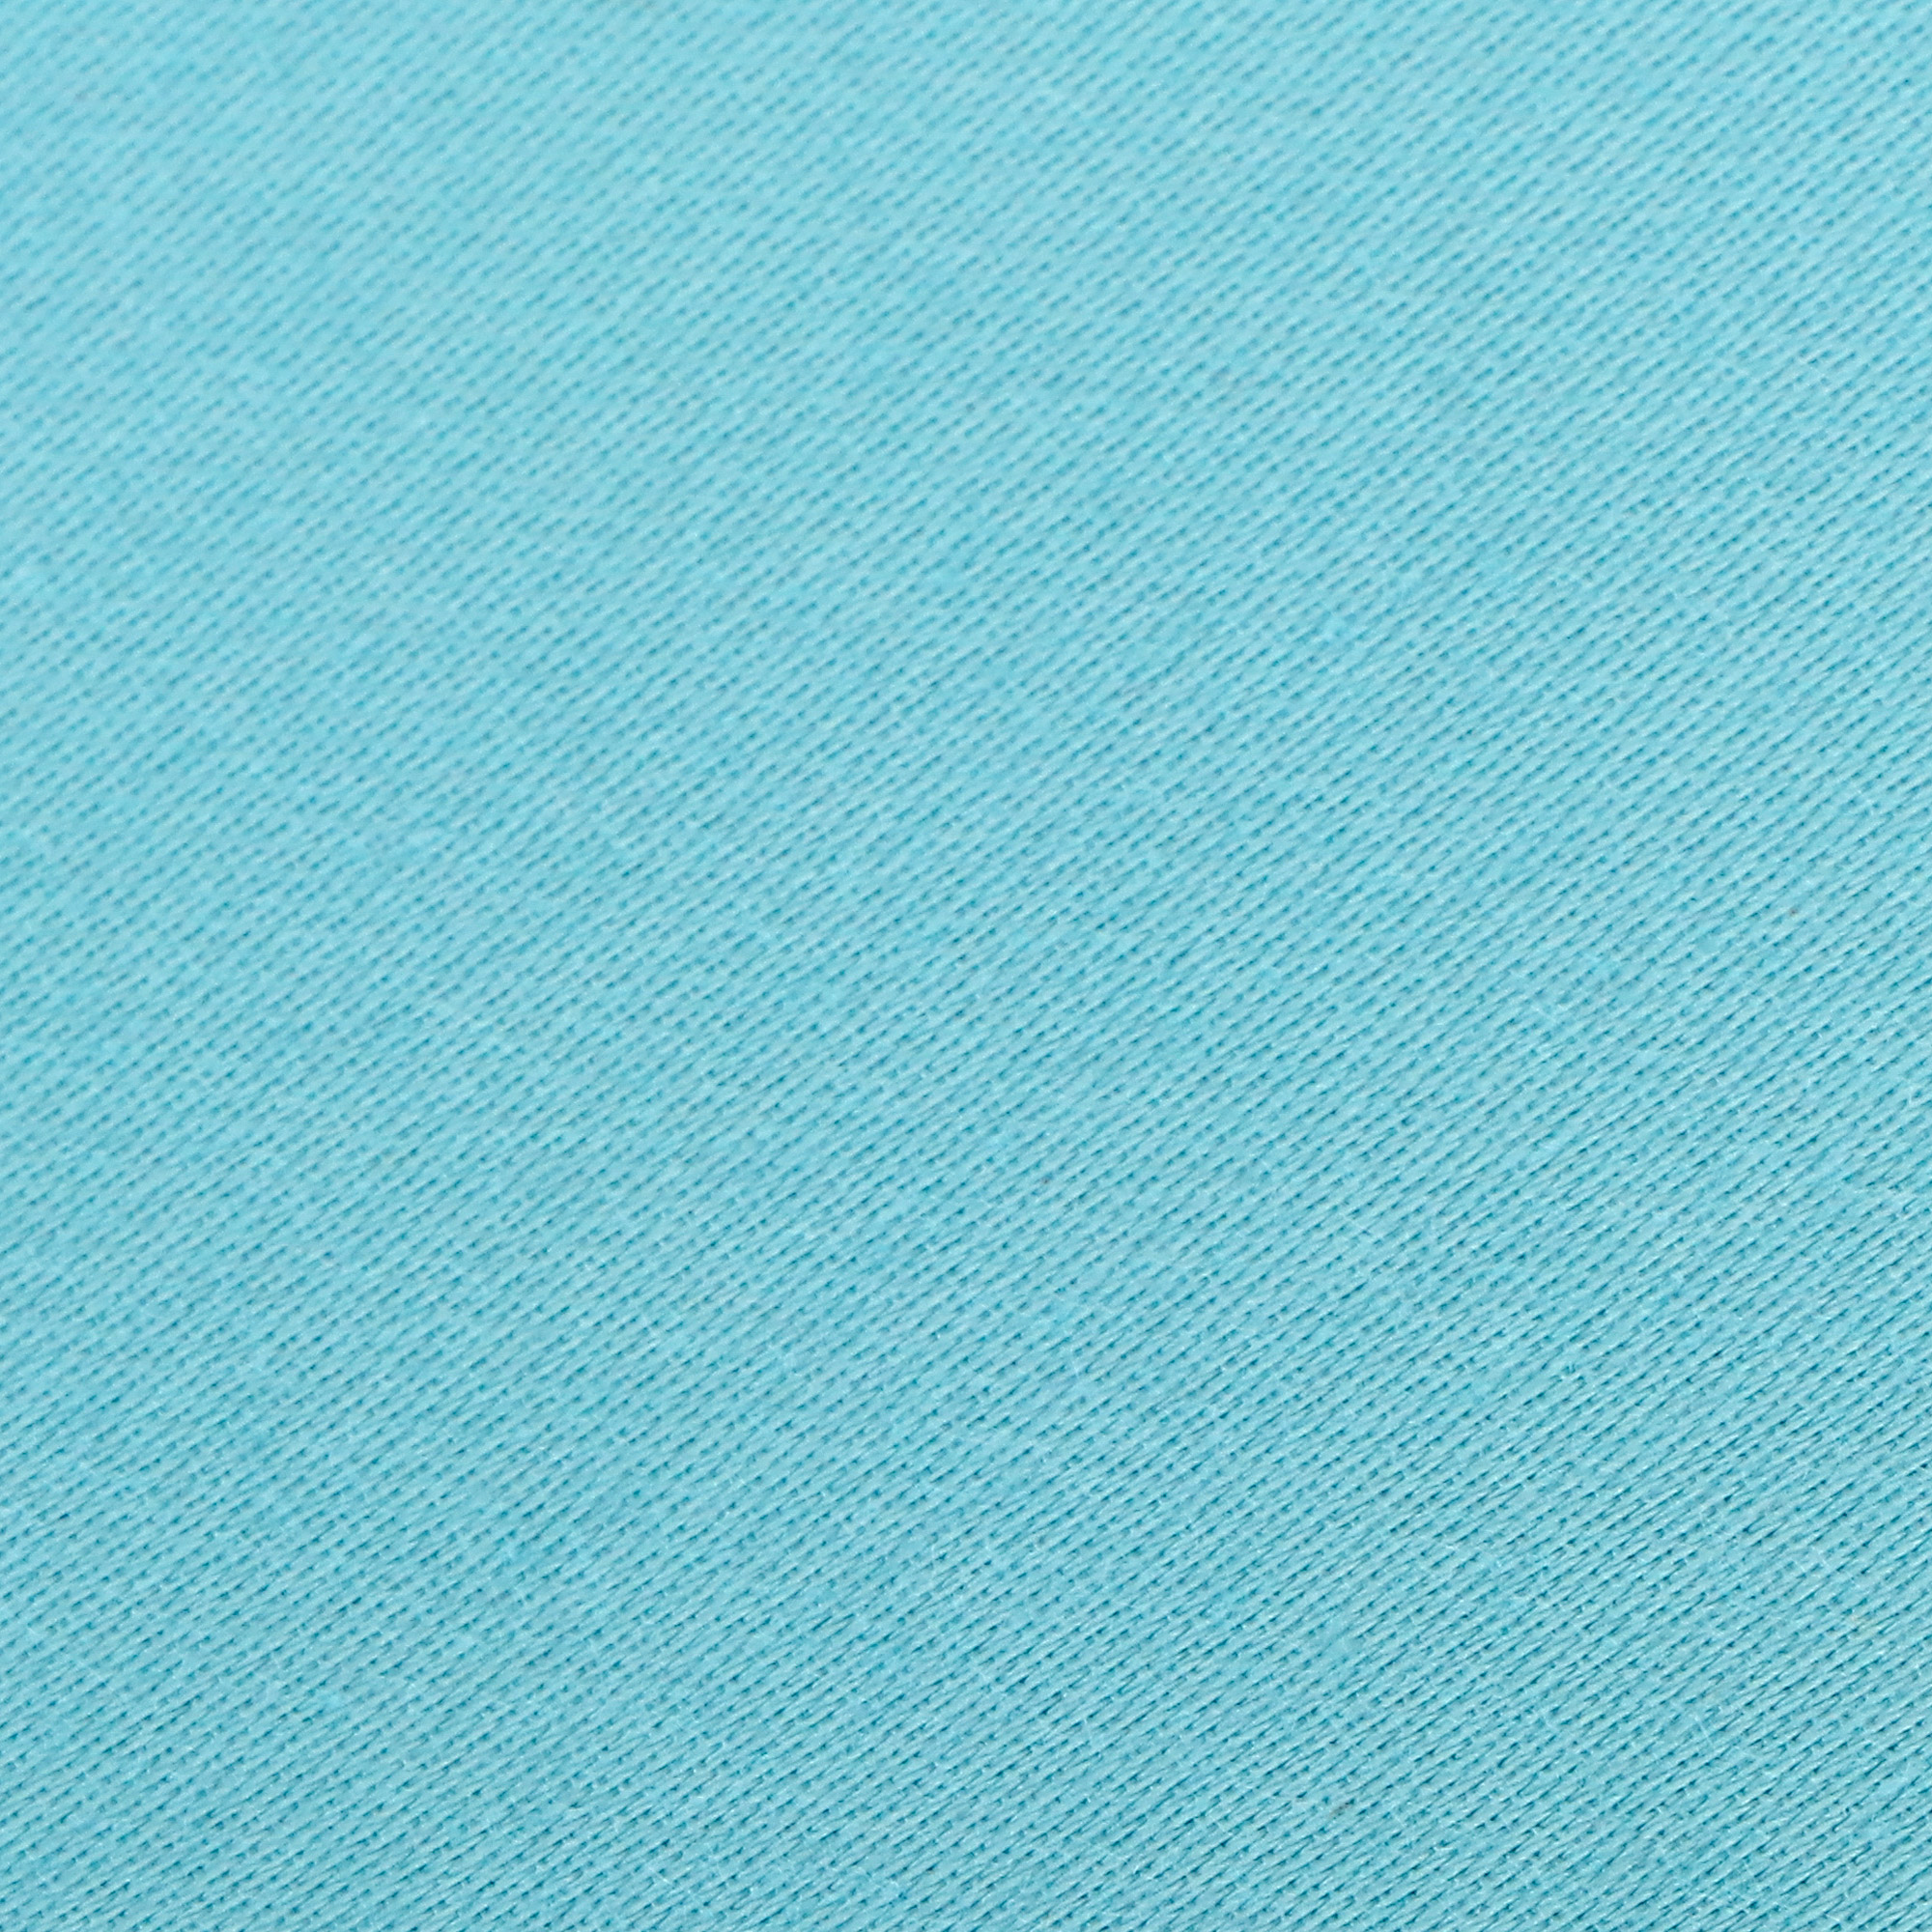 Комплект постельного белья La Besse Премиум Сатин синий Кинг сайз, размер Кинг сайз - фото 4